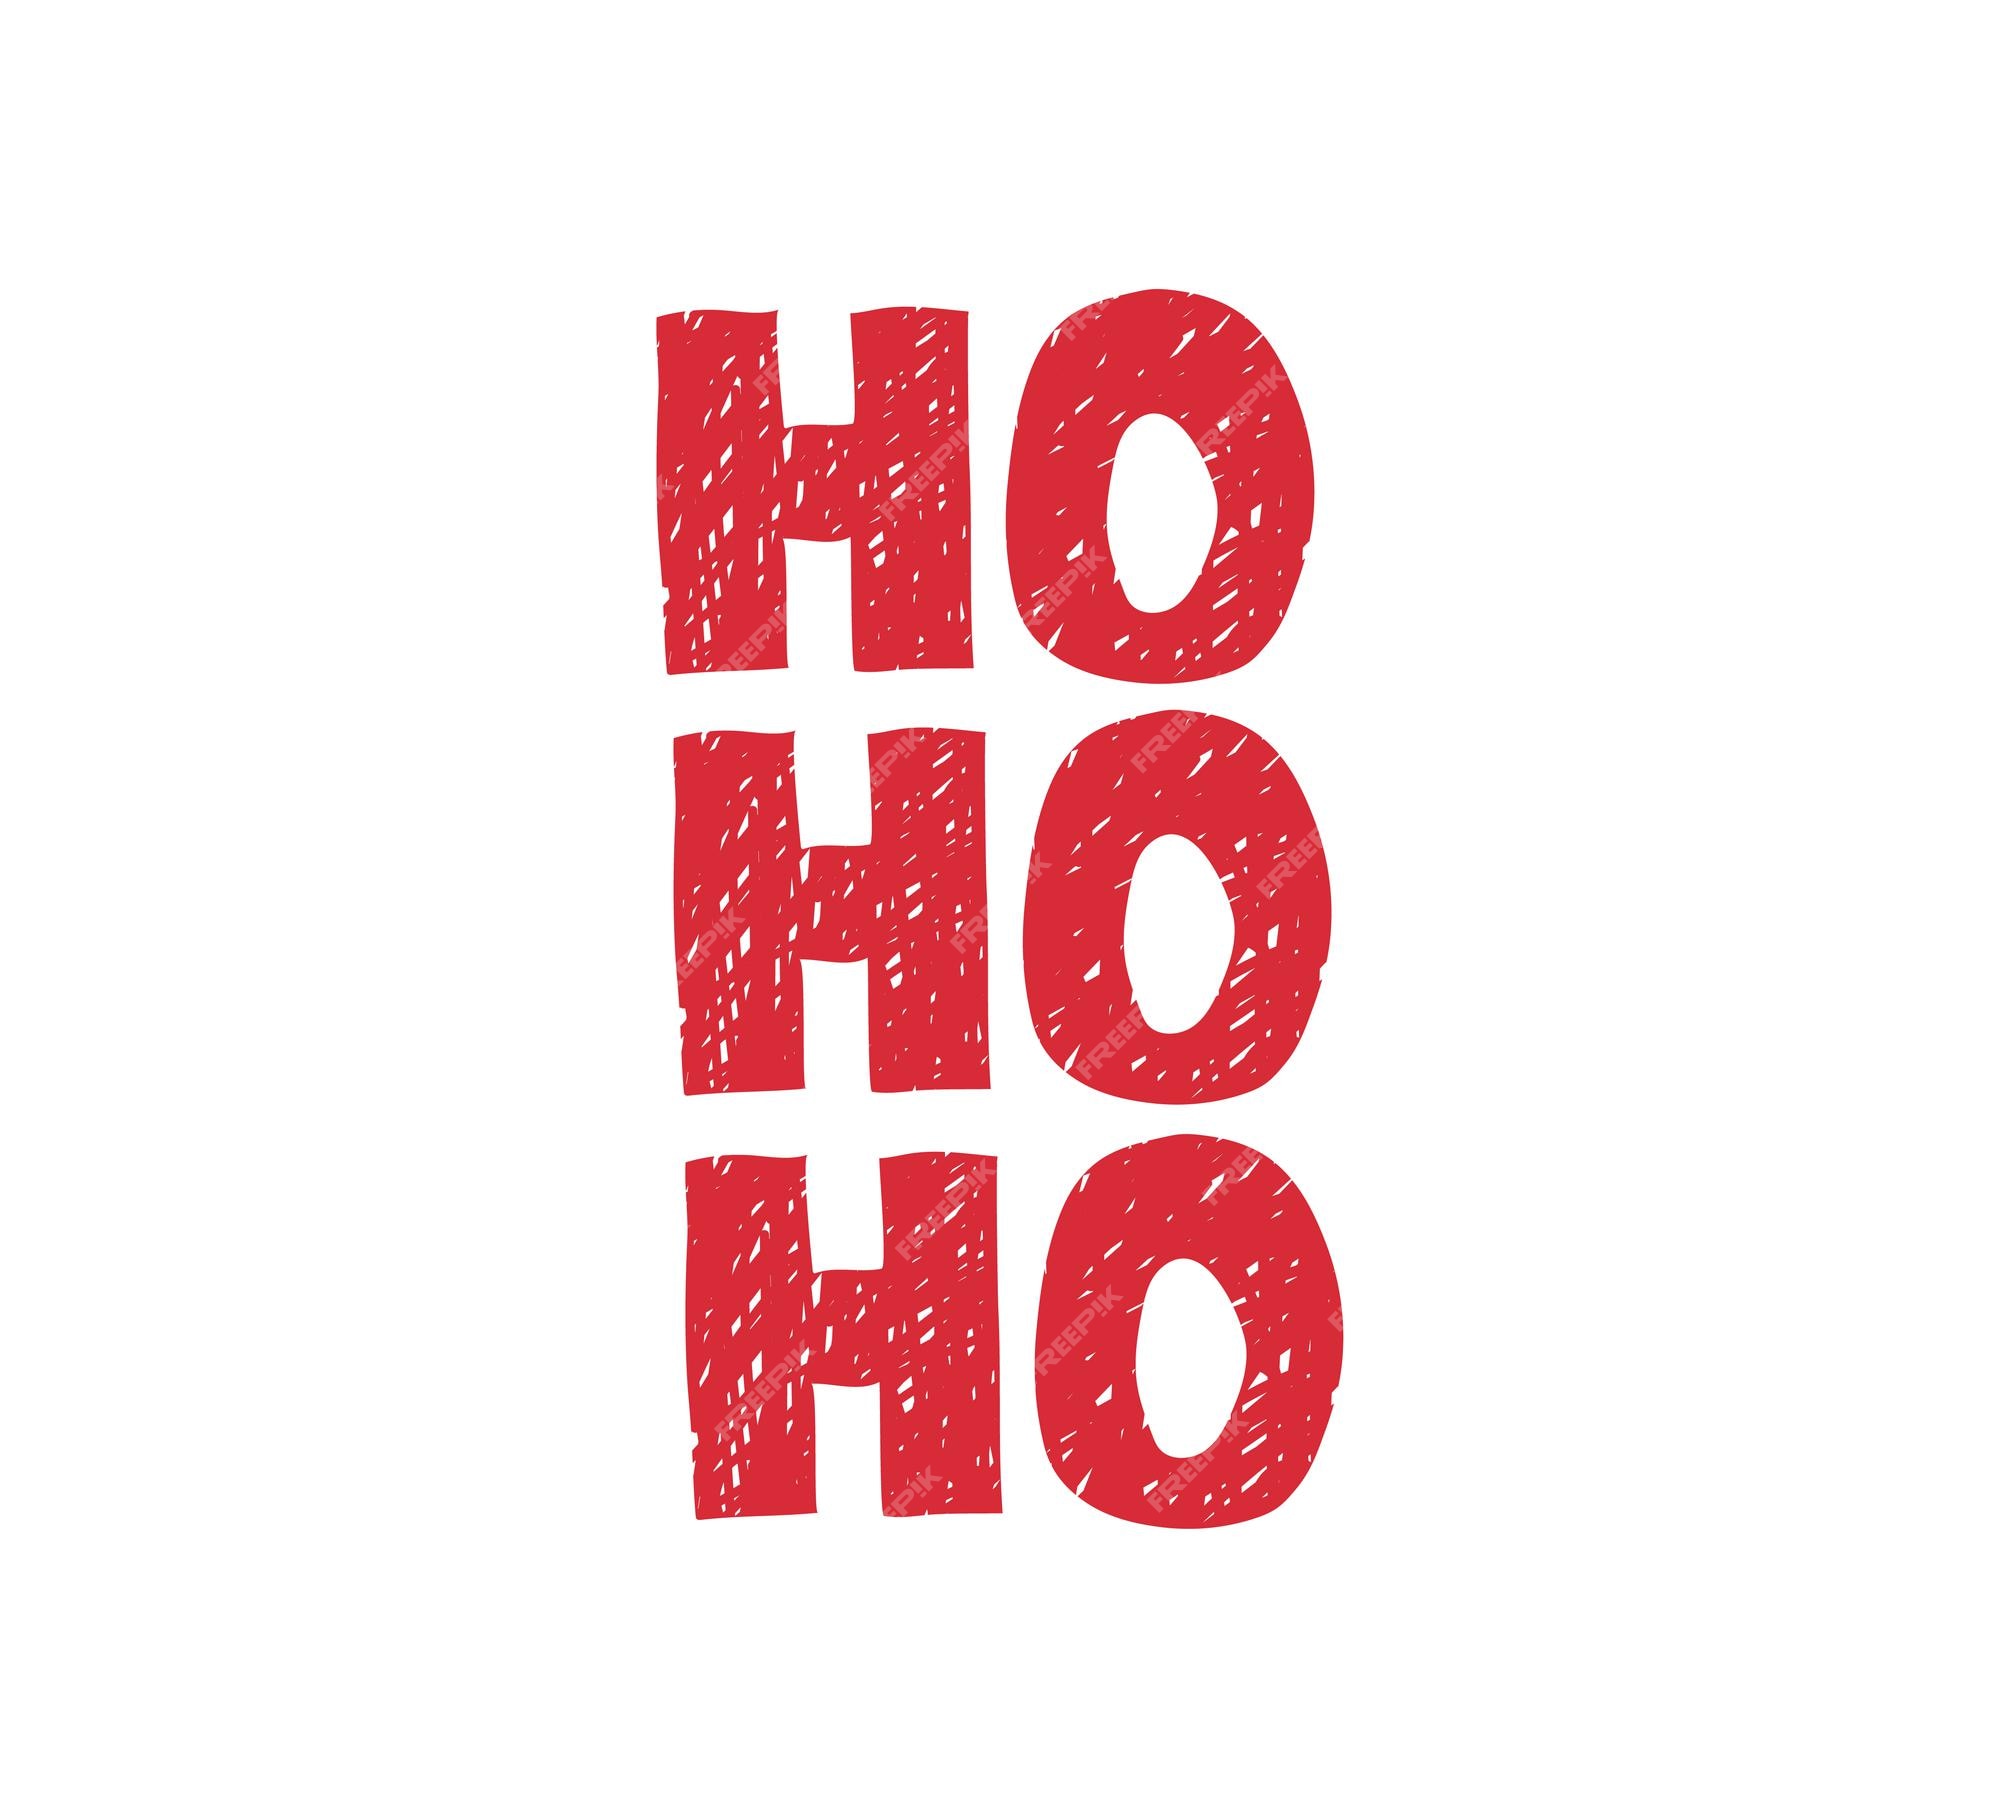 Ho Ho Ho Imagens – Download Grátis no Freepik